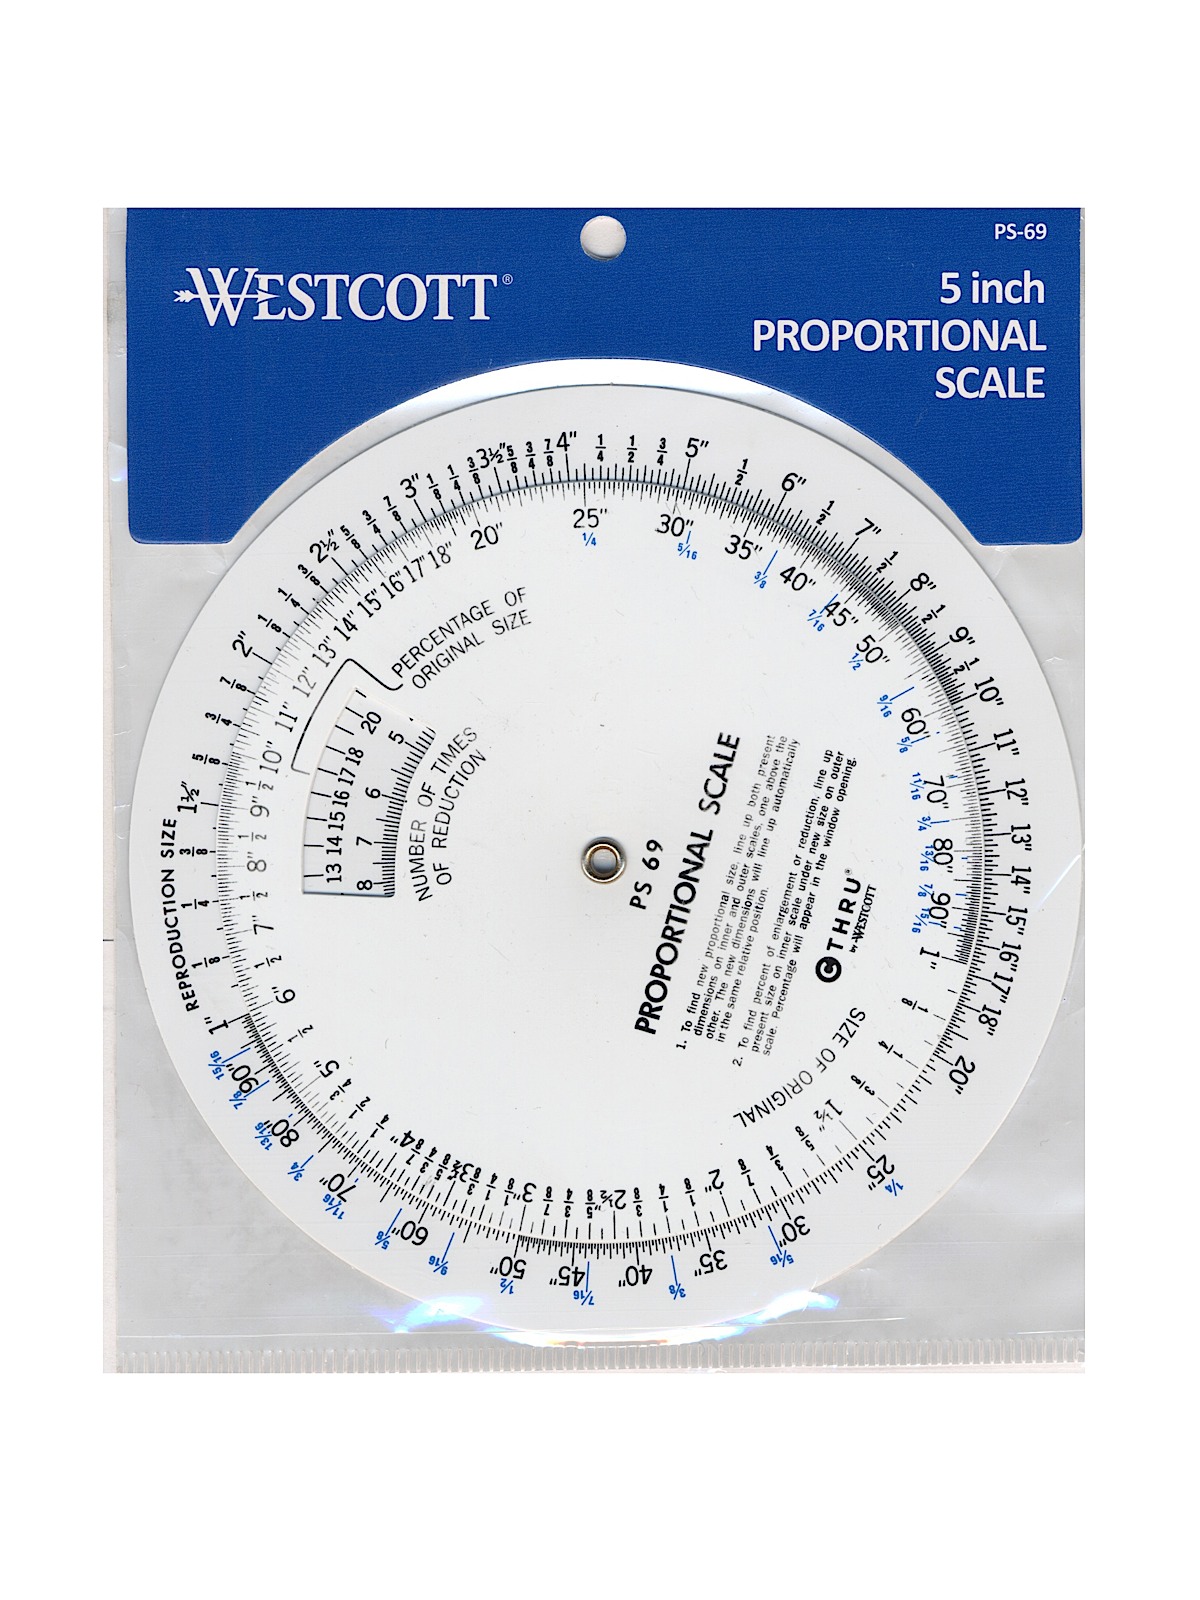 Westcott - Proportional Scale